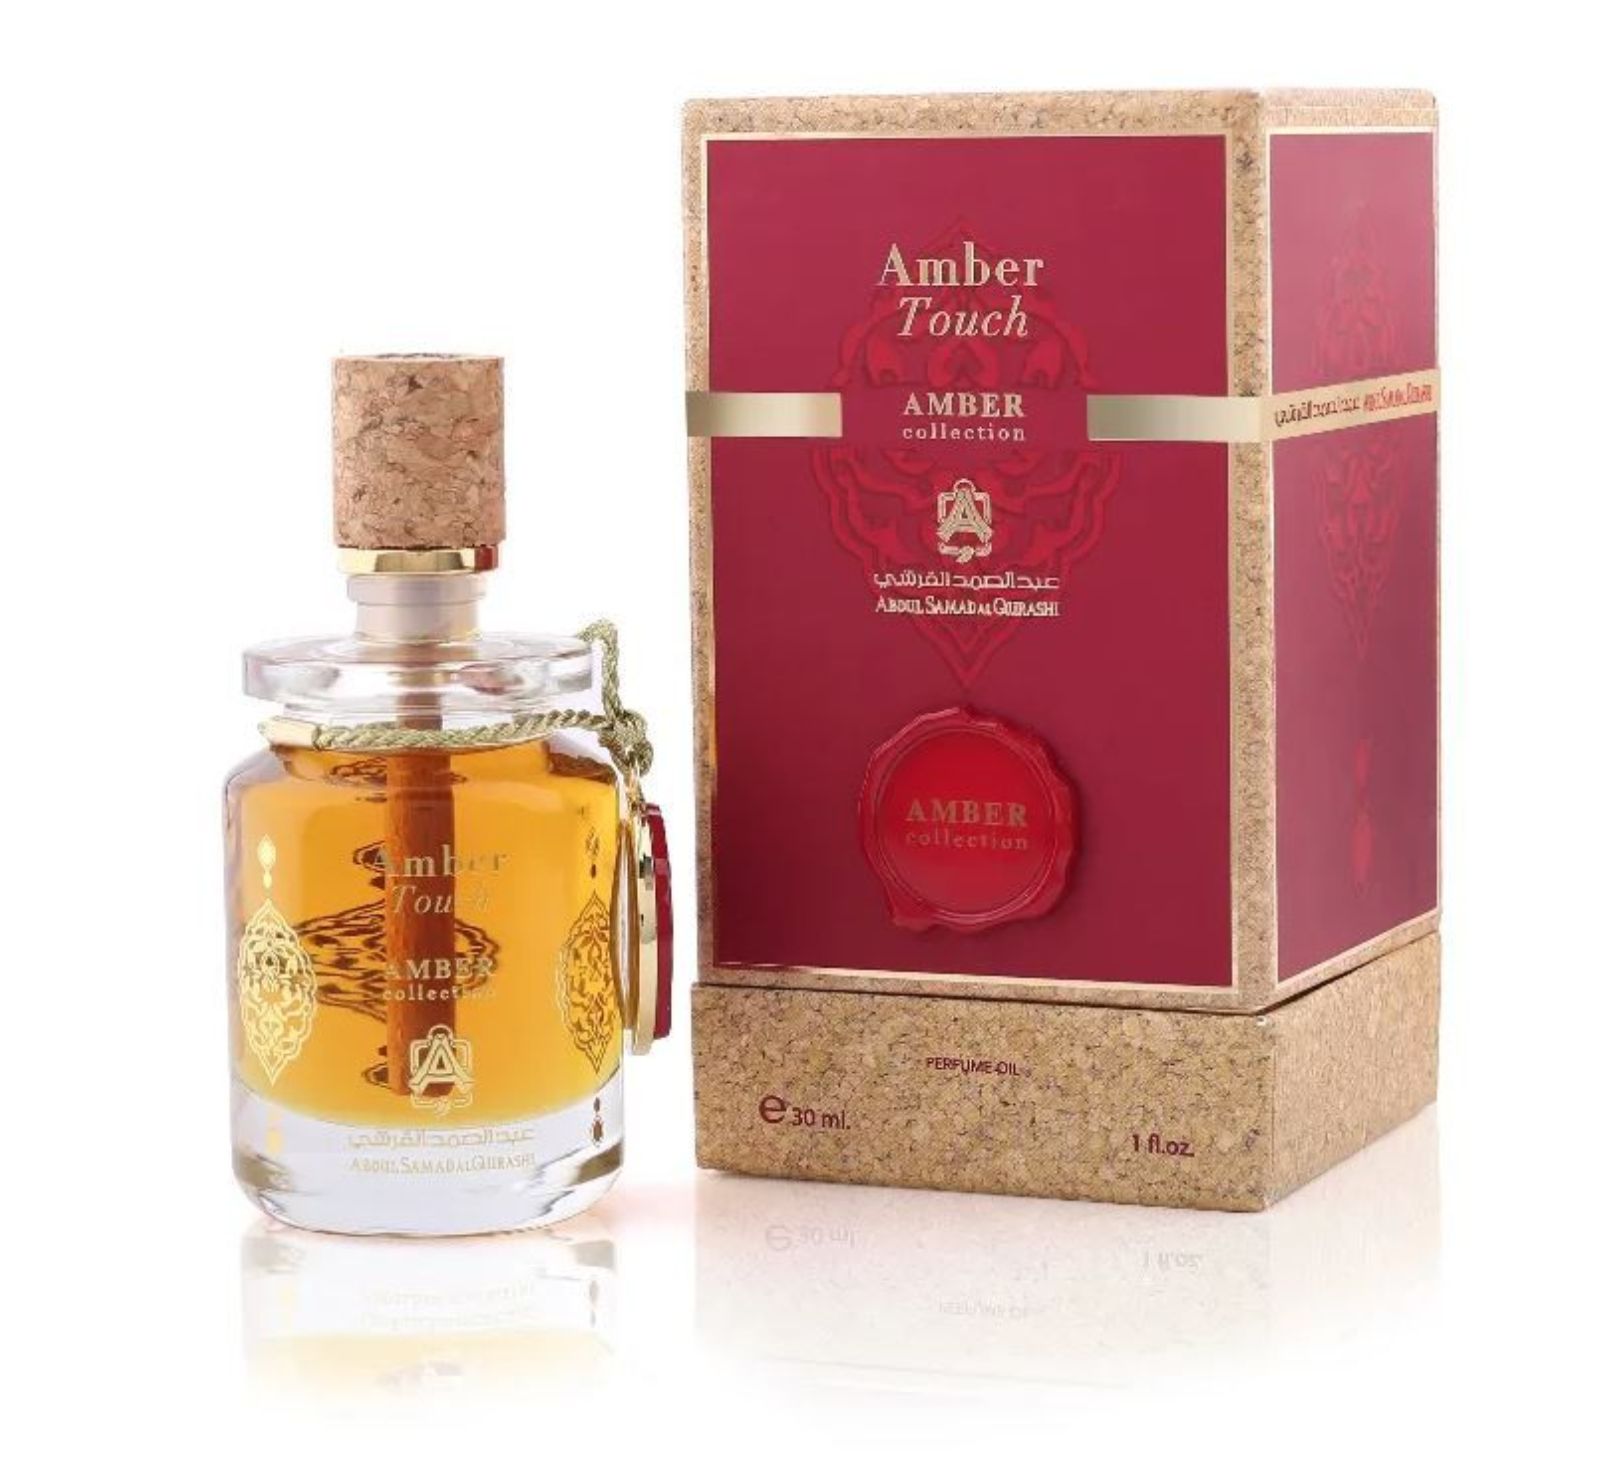 Amber collection. Abdul Samad al Qurashi Perfume. Abdul Samad al Qurashi oakmoss Amber. Духи в наличии. Private collection Amber.